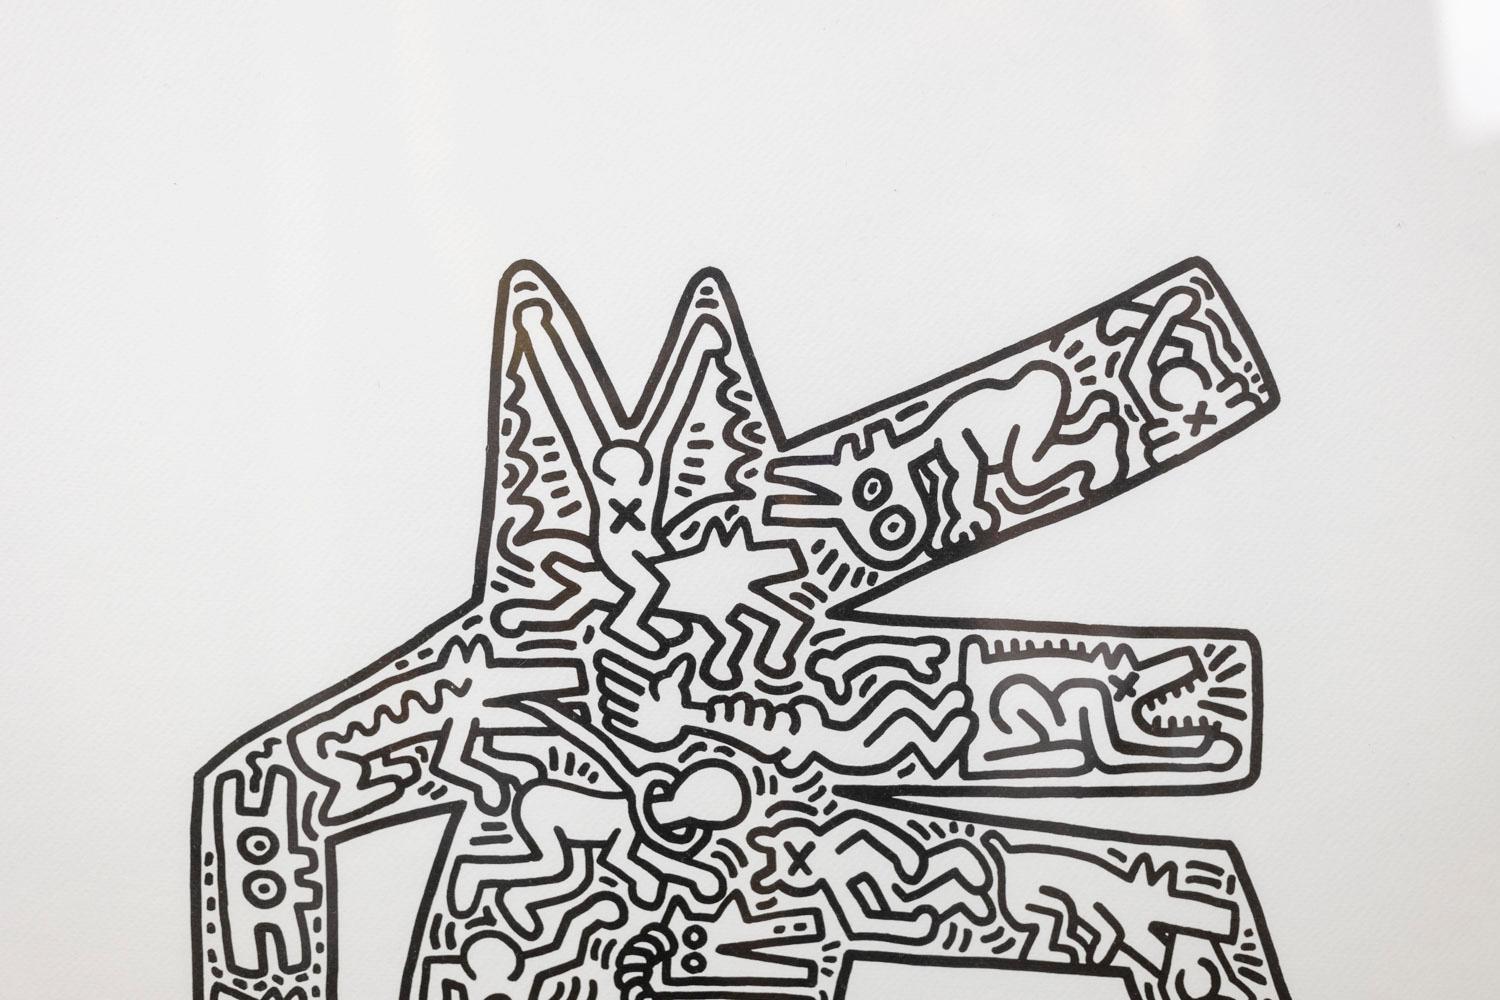 Keith Haring, signiert und nummeriert.

Abstrakter Siebdruck in Schwarz-Weiß-Tönen, der eine Figur andeutet, in einem Rahmen aus blonder Eiche.

Nummeriert 56/150.

Amerikanische Arbeiten aus den 1990er Jahren.